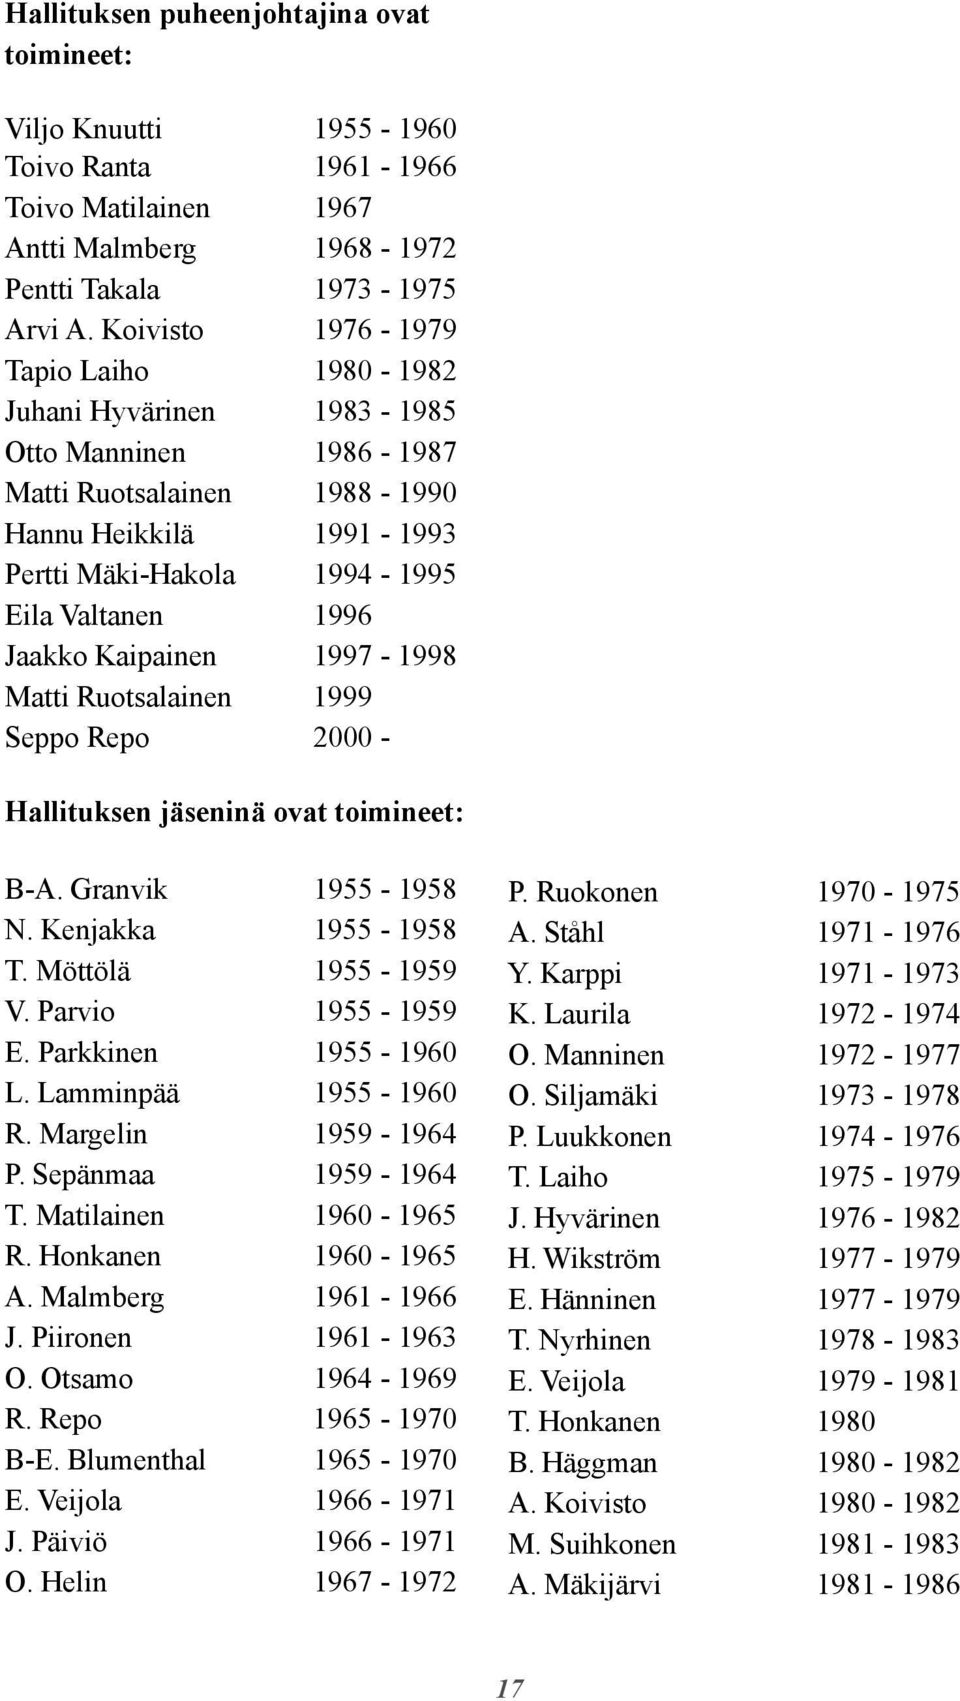 Jaakko Kaipainen 1997-1998 Matti Ruotsalainen 1999 Seppo Repo 2000 - Hallituksen jäseninä ovat toimineet: B-A. Granvik 1955-1958 N. Kenjakka 1955-1958 T. Möttölä 1955-1959 V. Parvio 1955-1959 E.